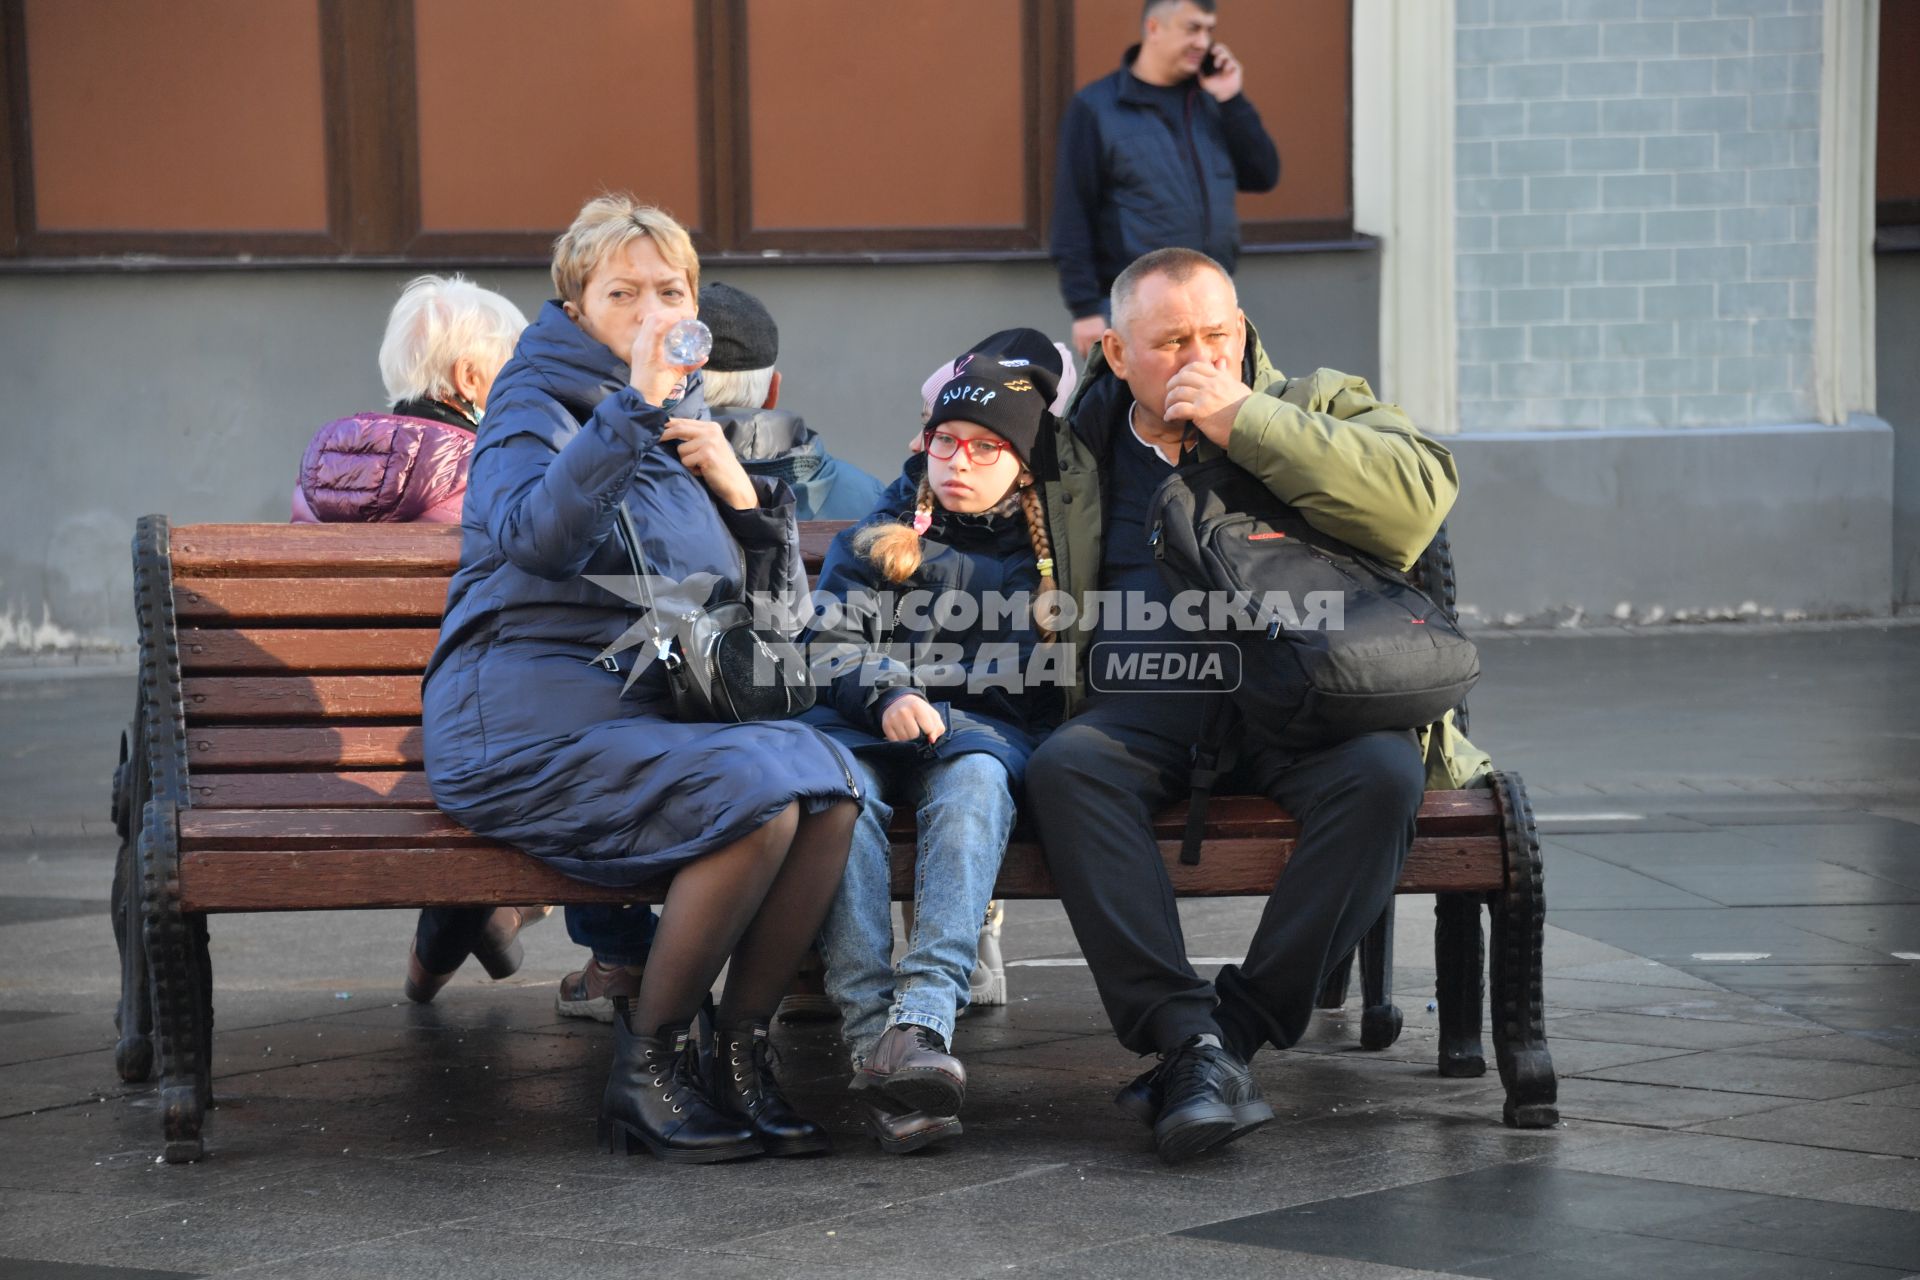 Москва. Семья отдыхает на скамейке на улице.